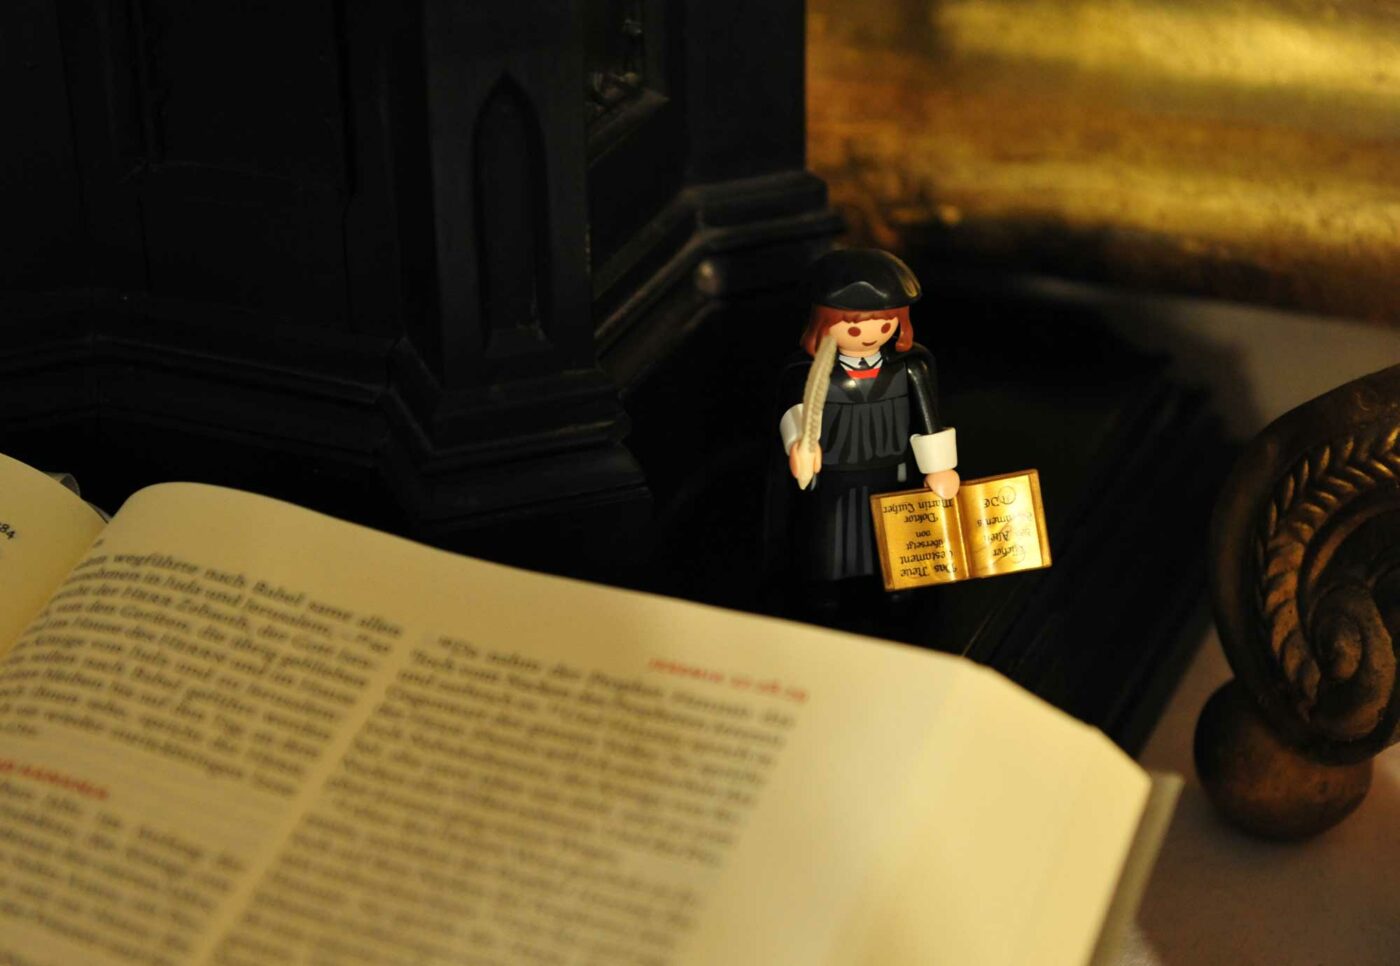 "Luther wollte nie eine neue Kirche gründen, dennoch veränderten seine Gedanken die damalige Welt." Foto: epd/Uschmann